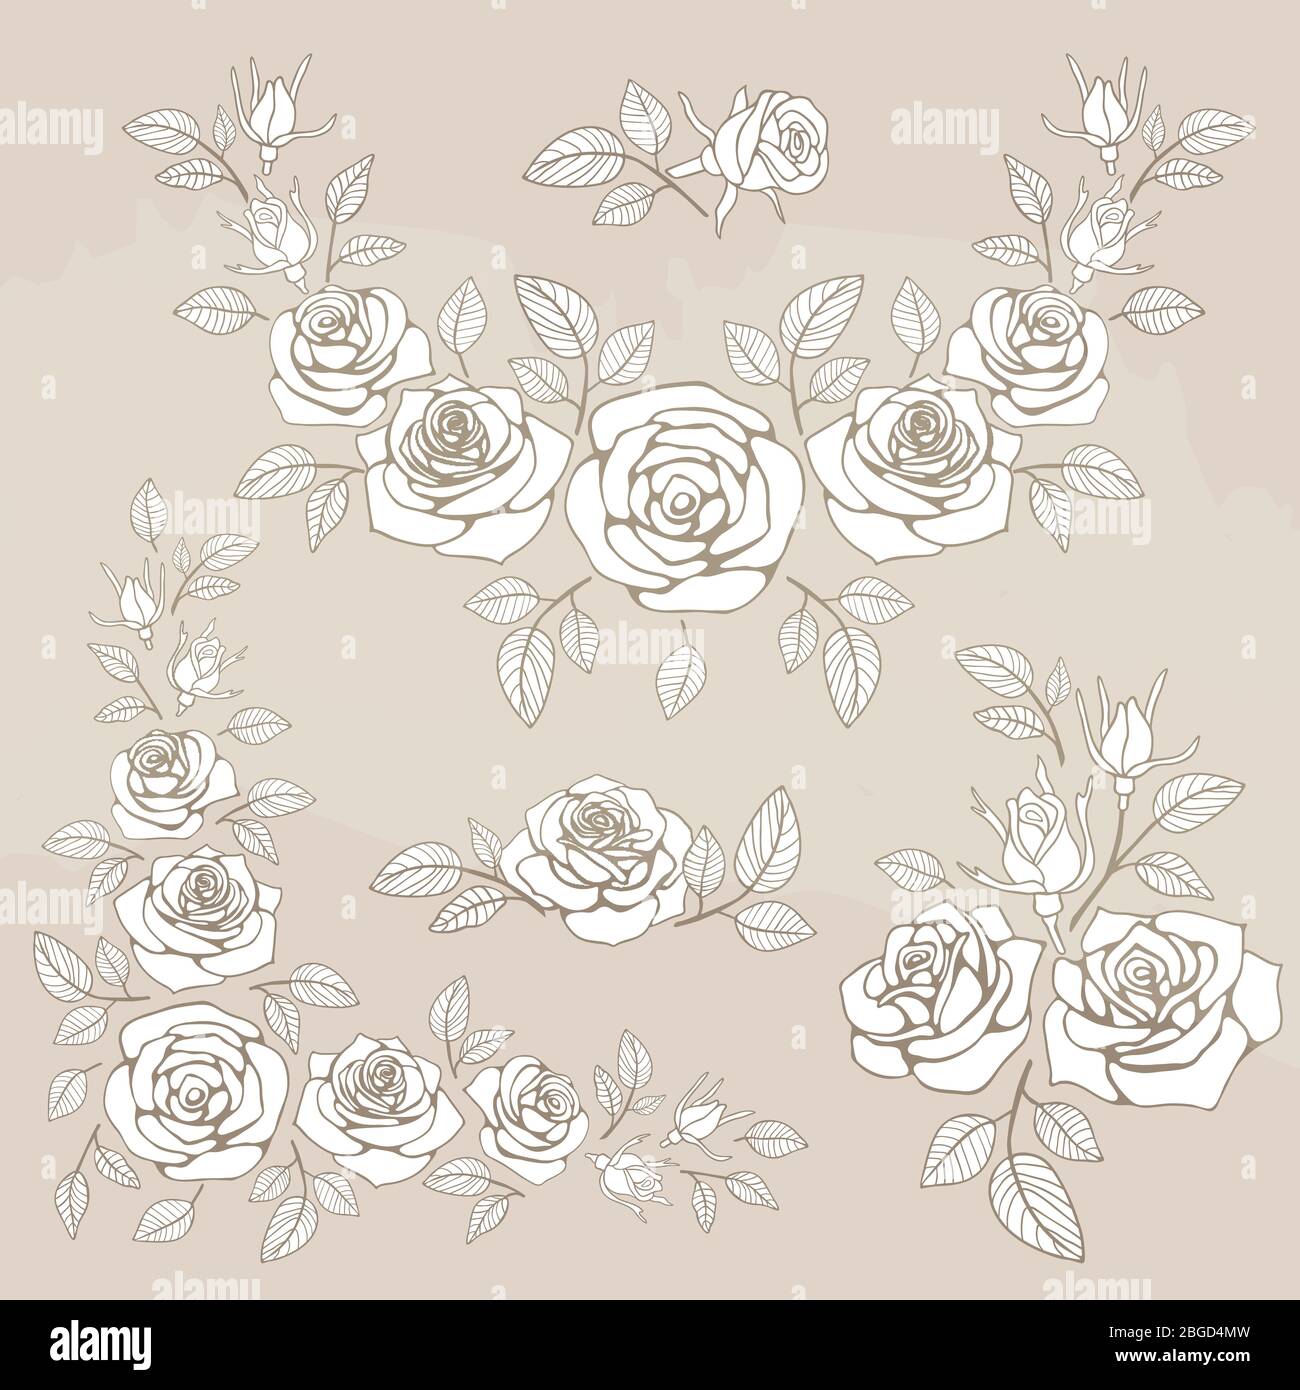 Romantischer Vintage-Strauß mit Rosen und Blättern. Vektorgrafik Stock Vektor